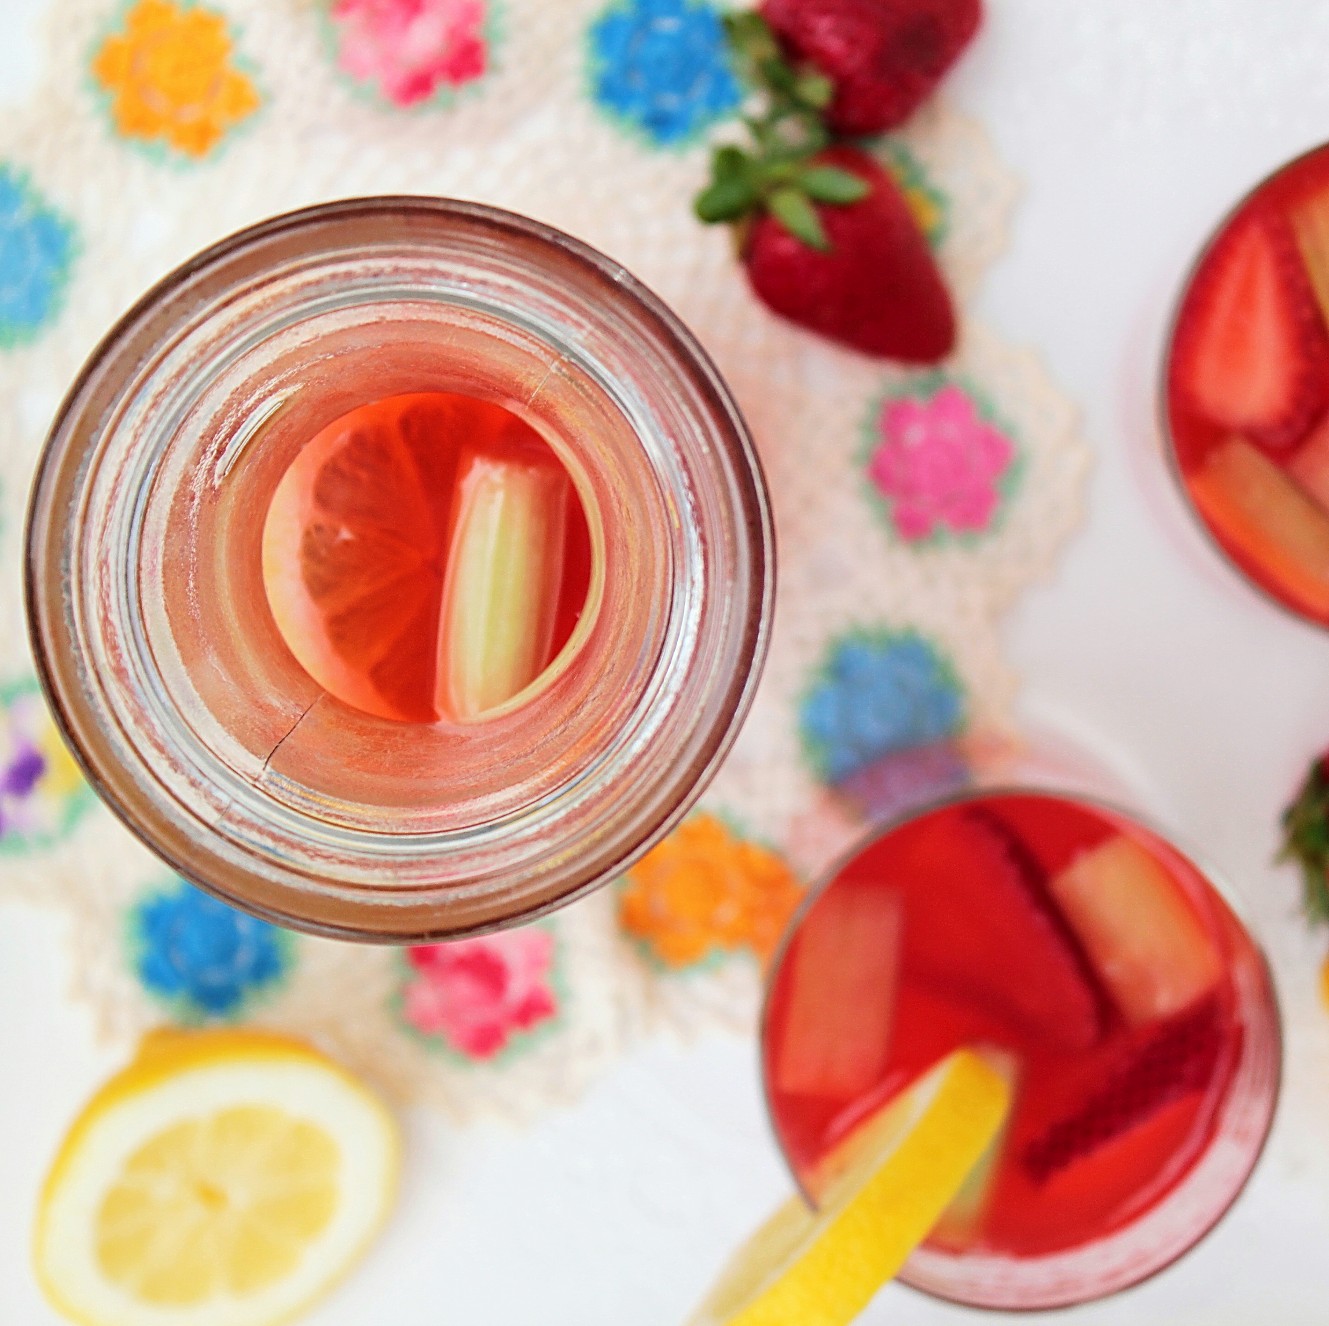 Strawberry Rhubarb Lemonade